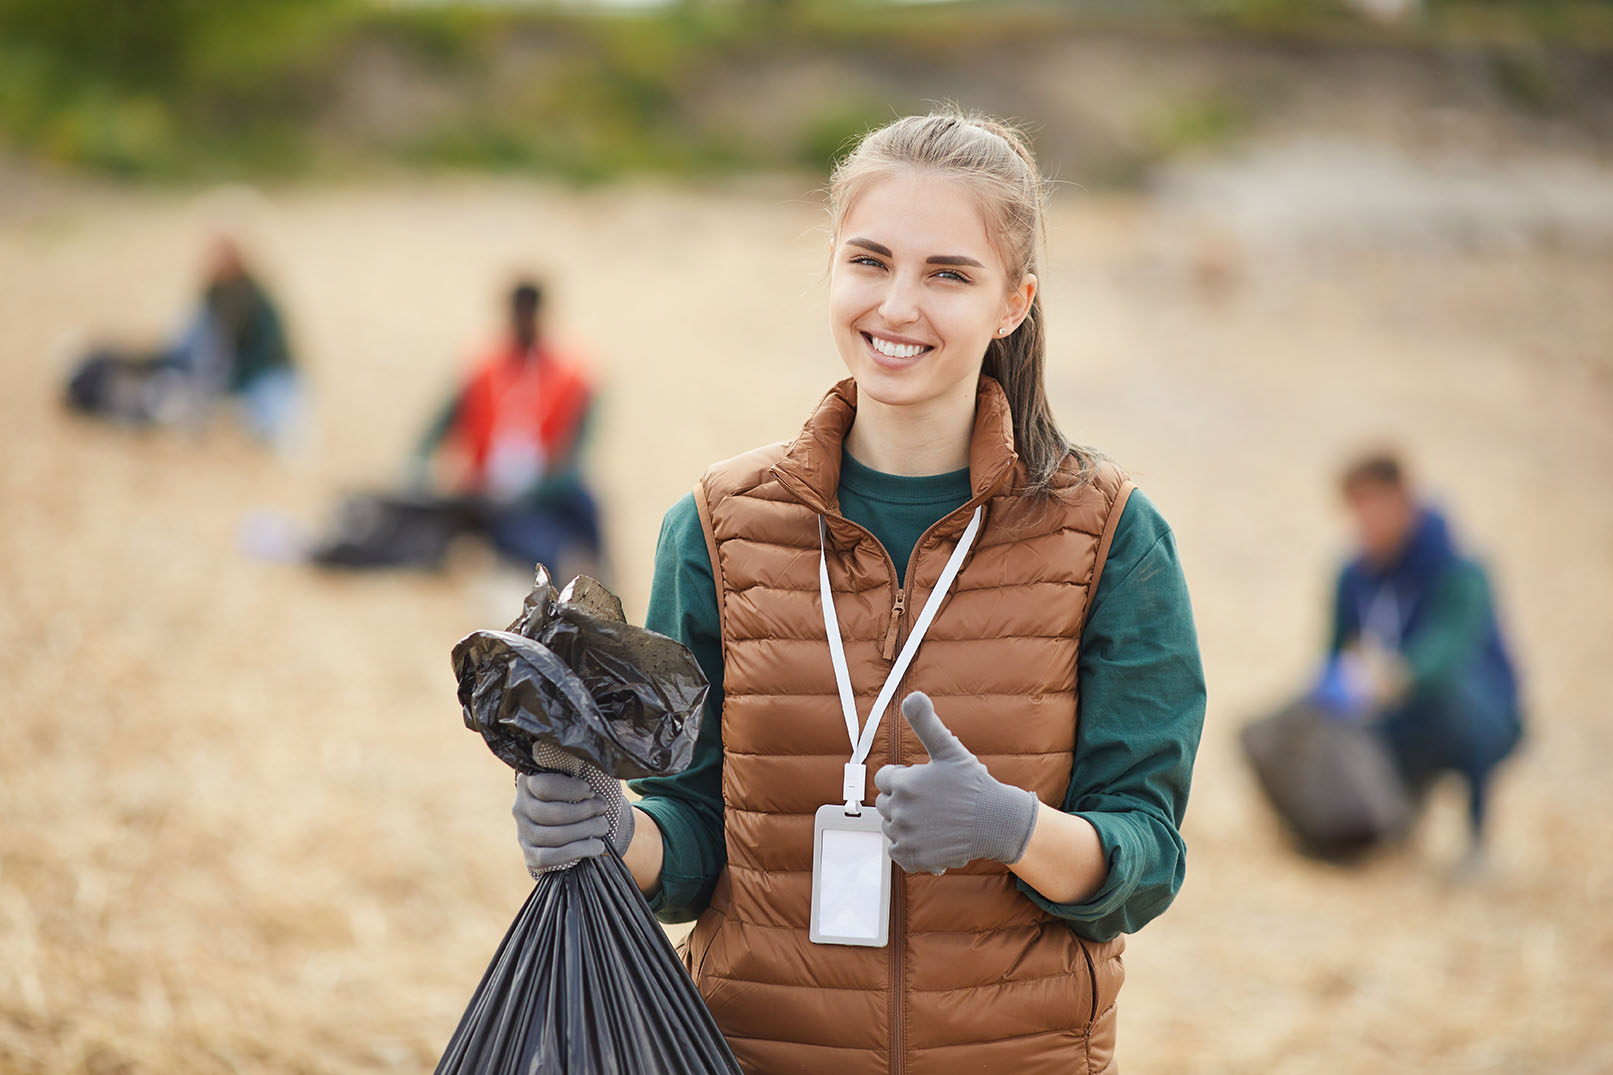 volunteer-with-garbage-outdoors-2021-08-28-11-56-56-utc.jpg